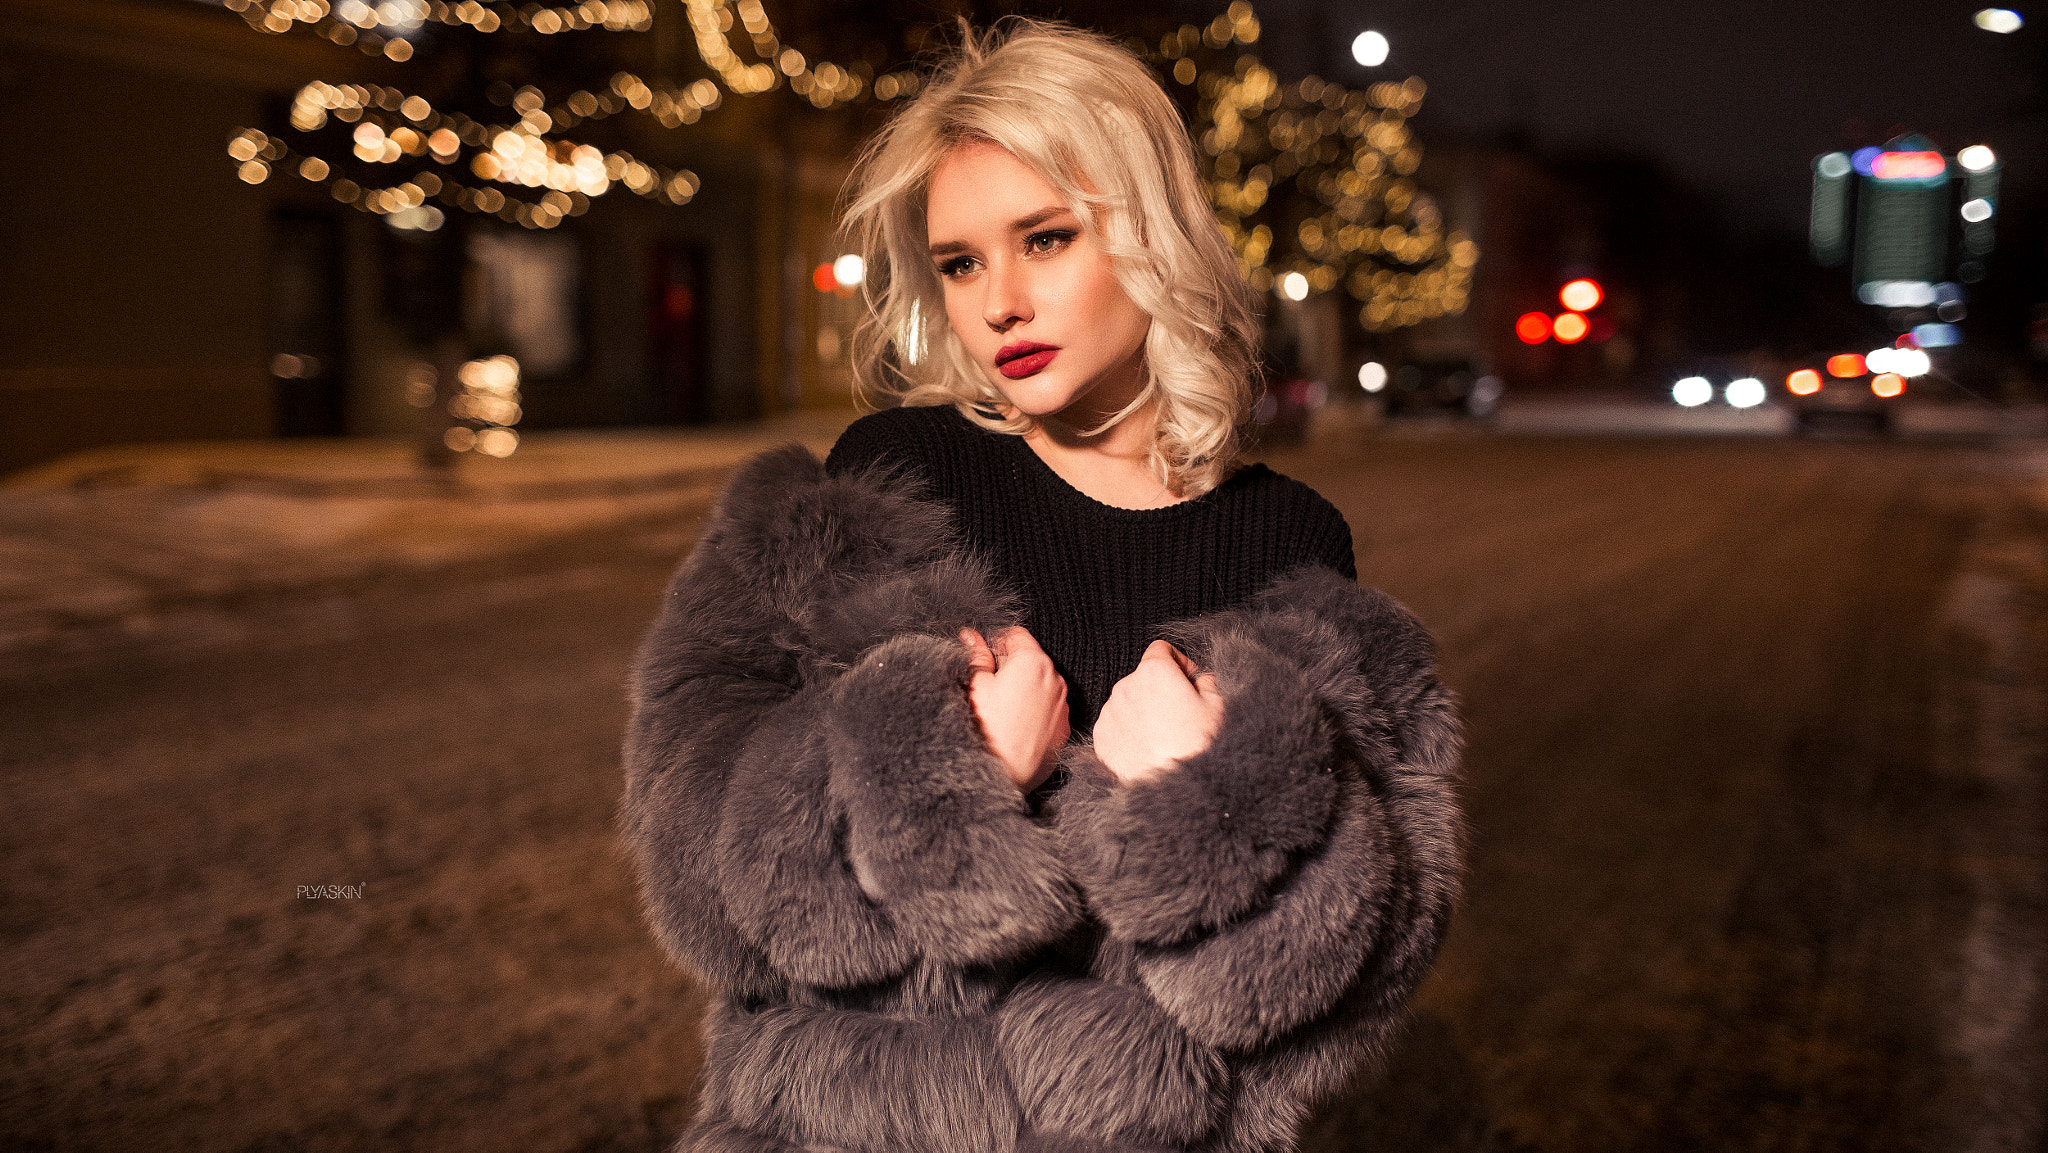 Blonde Fur Bokeh Portrait Street Looking Away Women Outdoors Red Lipstick Women Fur Coats Vitaly Ply 2048x1153